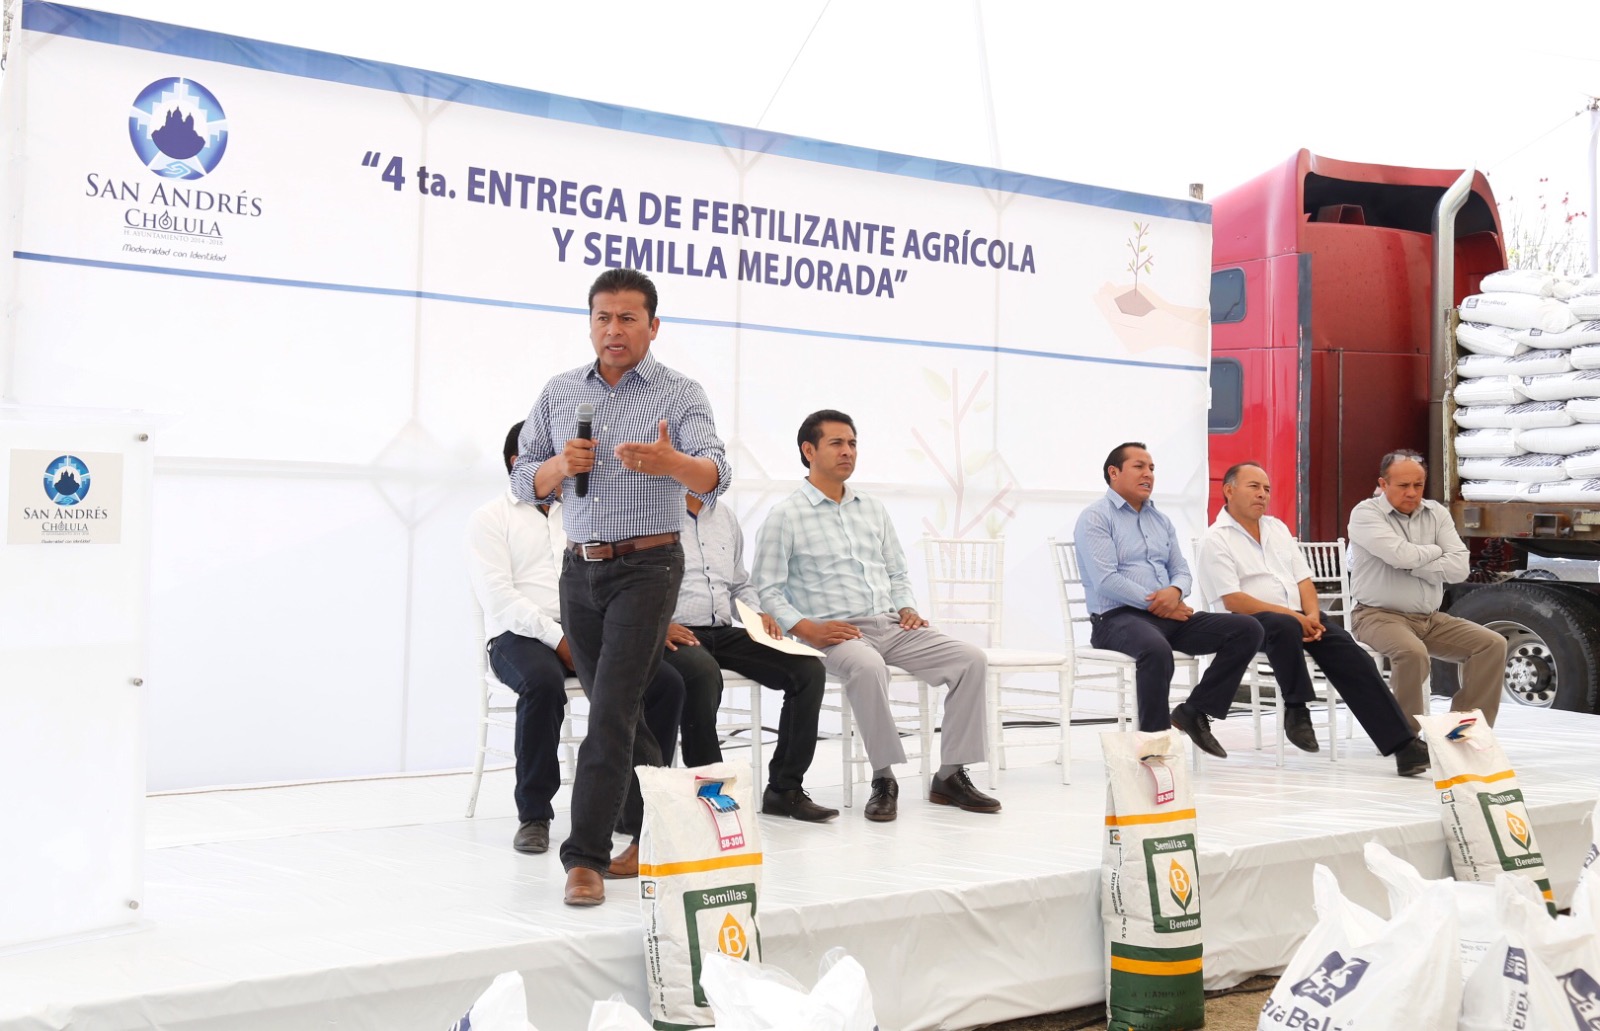 Entregan fertilizante y semilla a campesinos de San Andrés Cholula